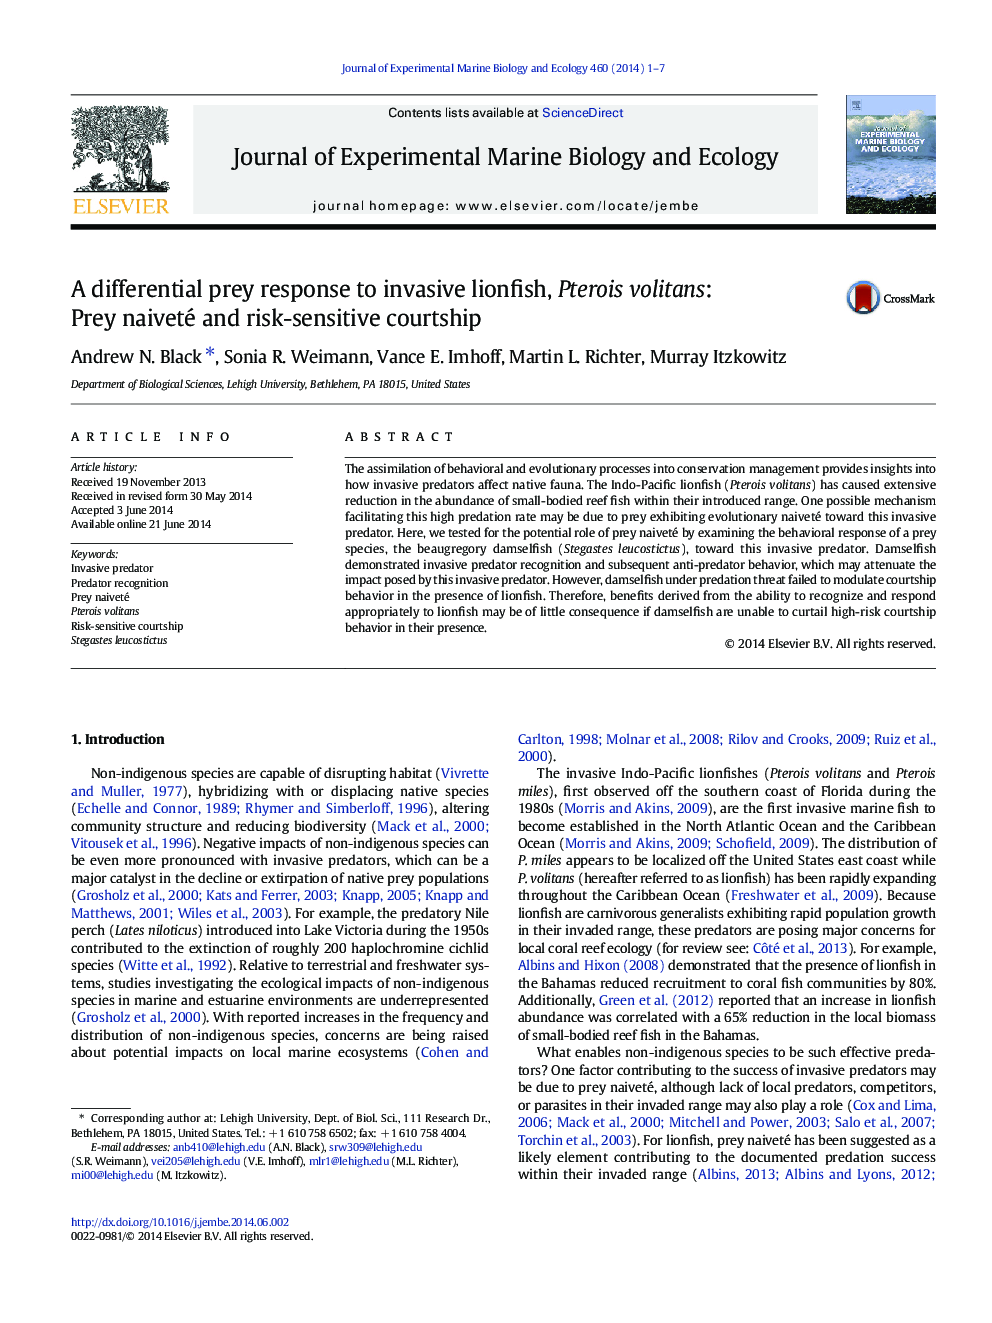 A differential prey response to invasive lionfish, Pterois volitans: Prey naiveté and risk-sensitive courtship